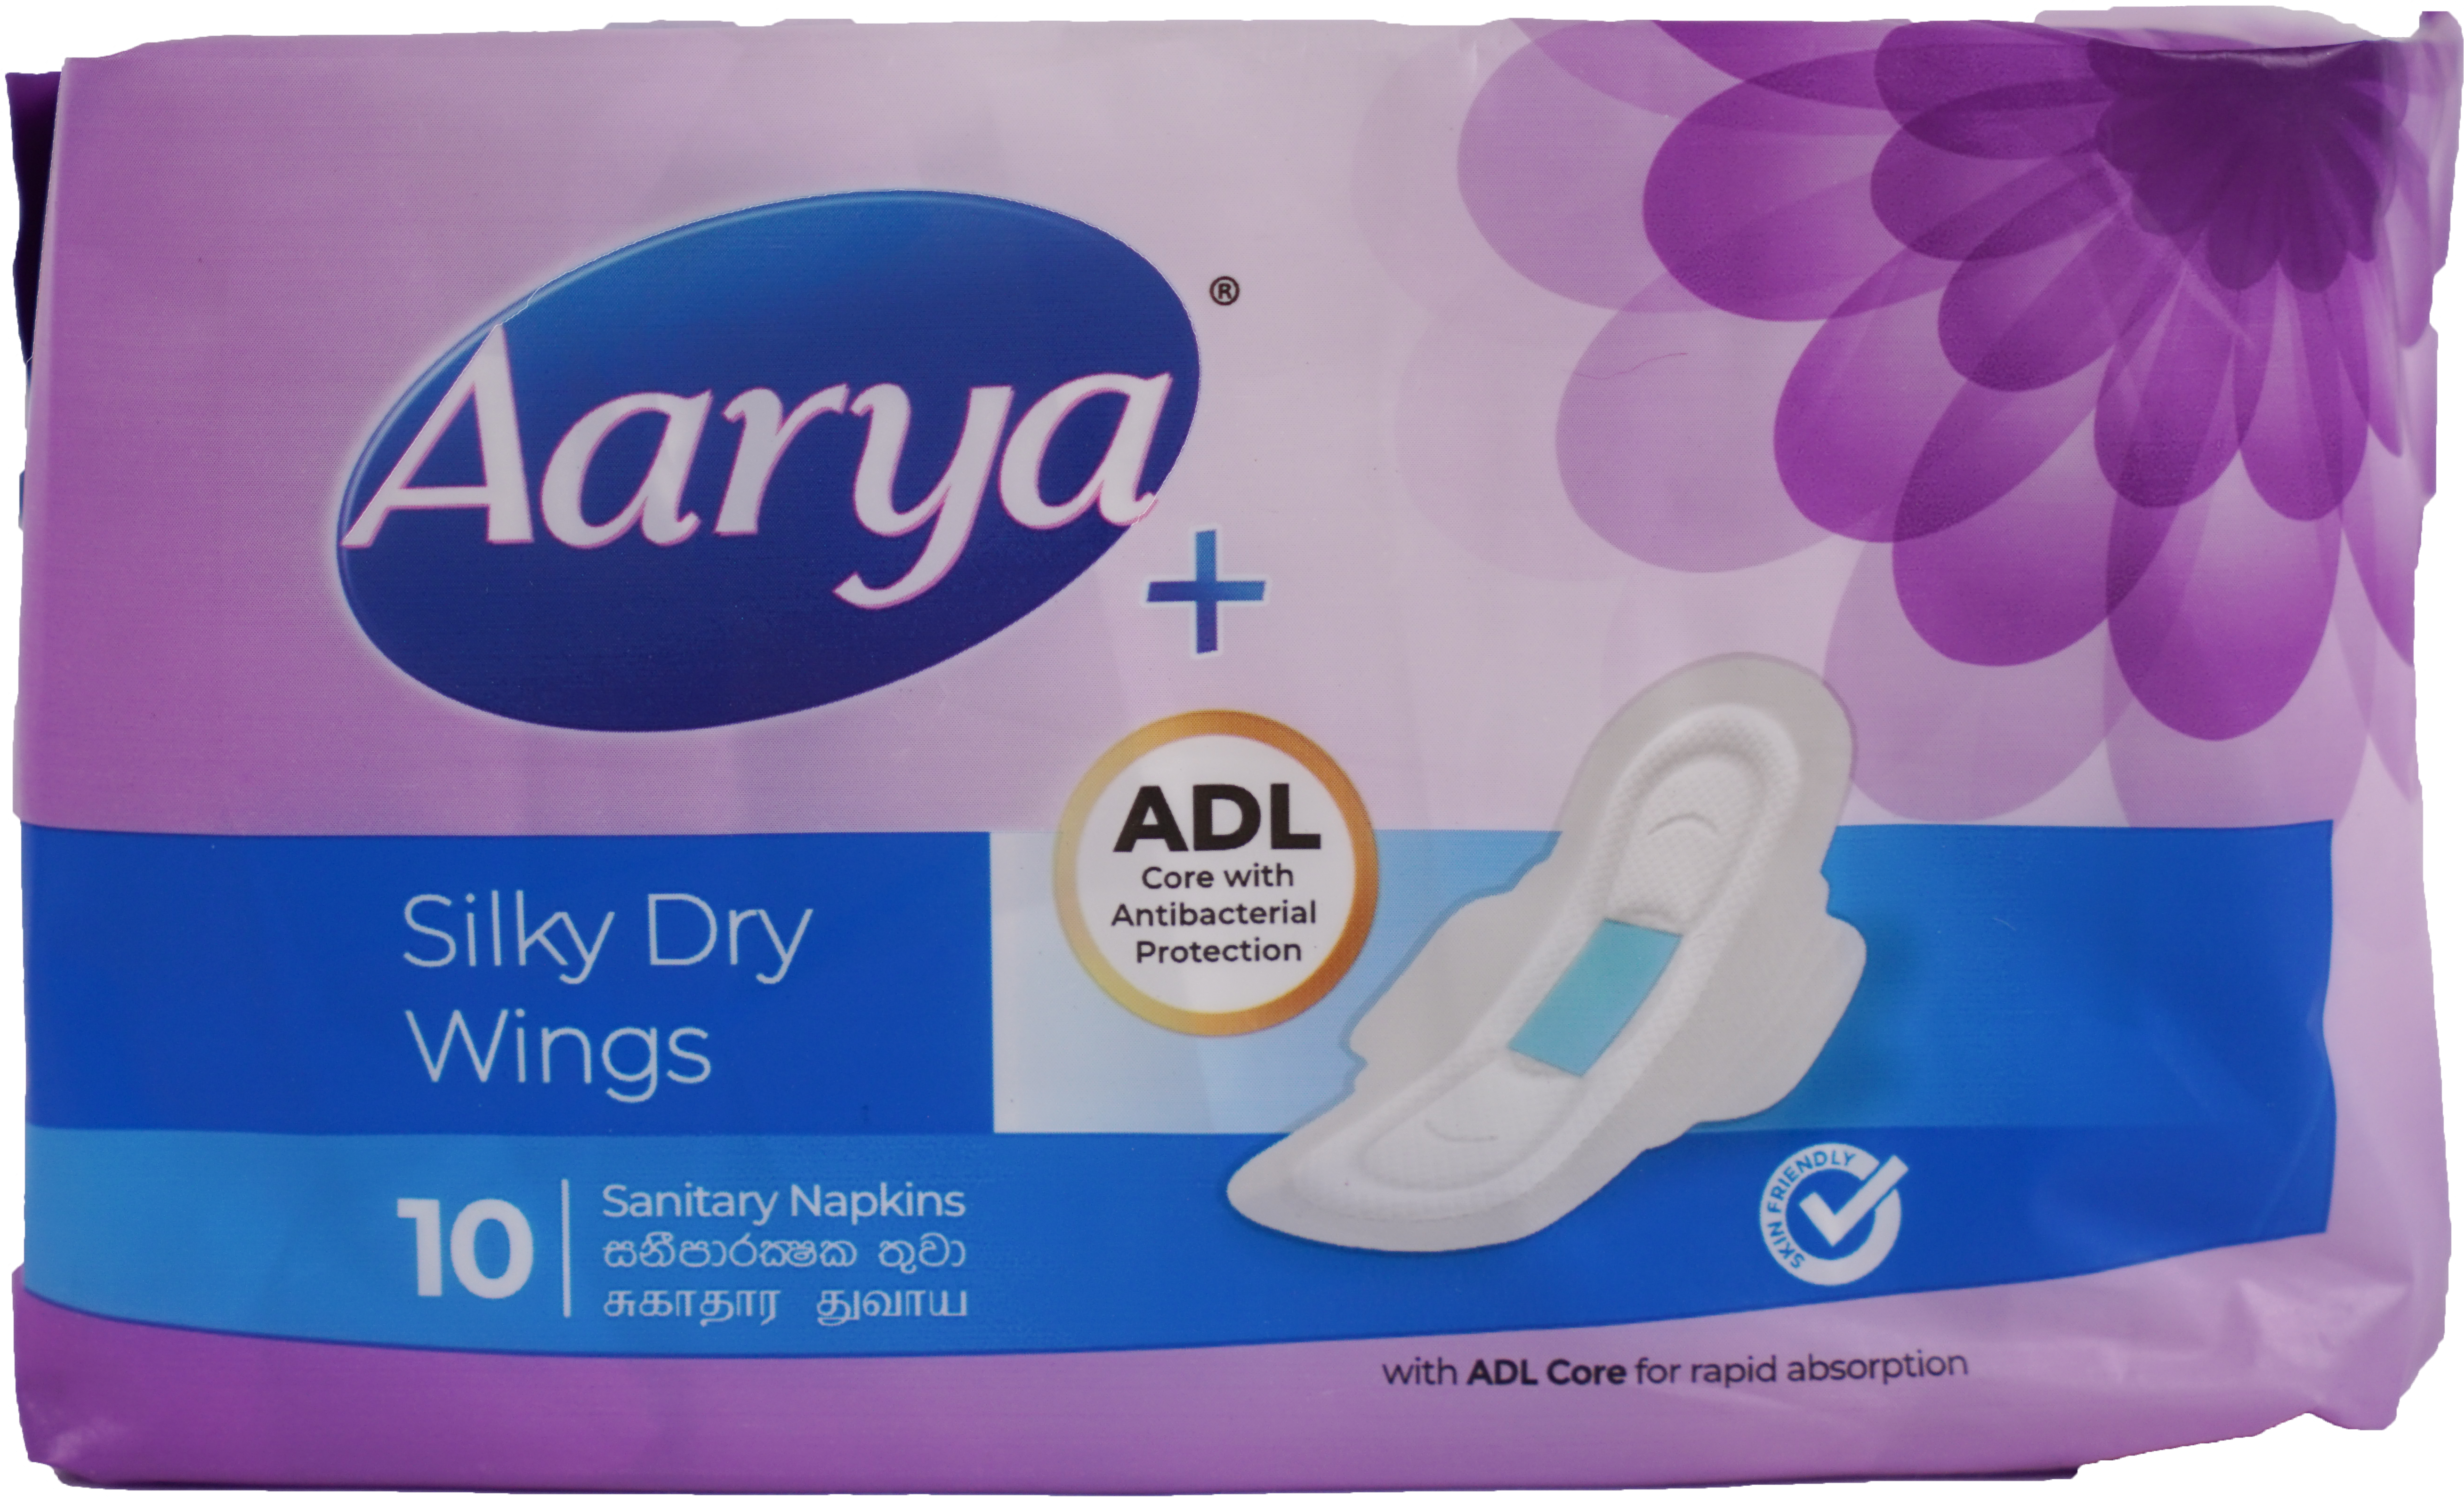 aarya Silky Dry Wings